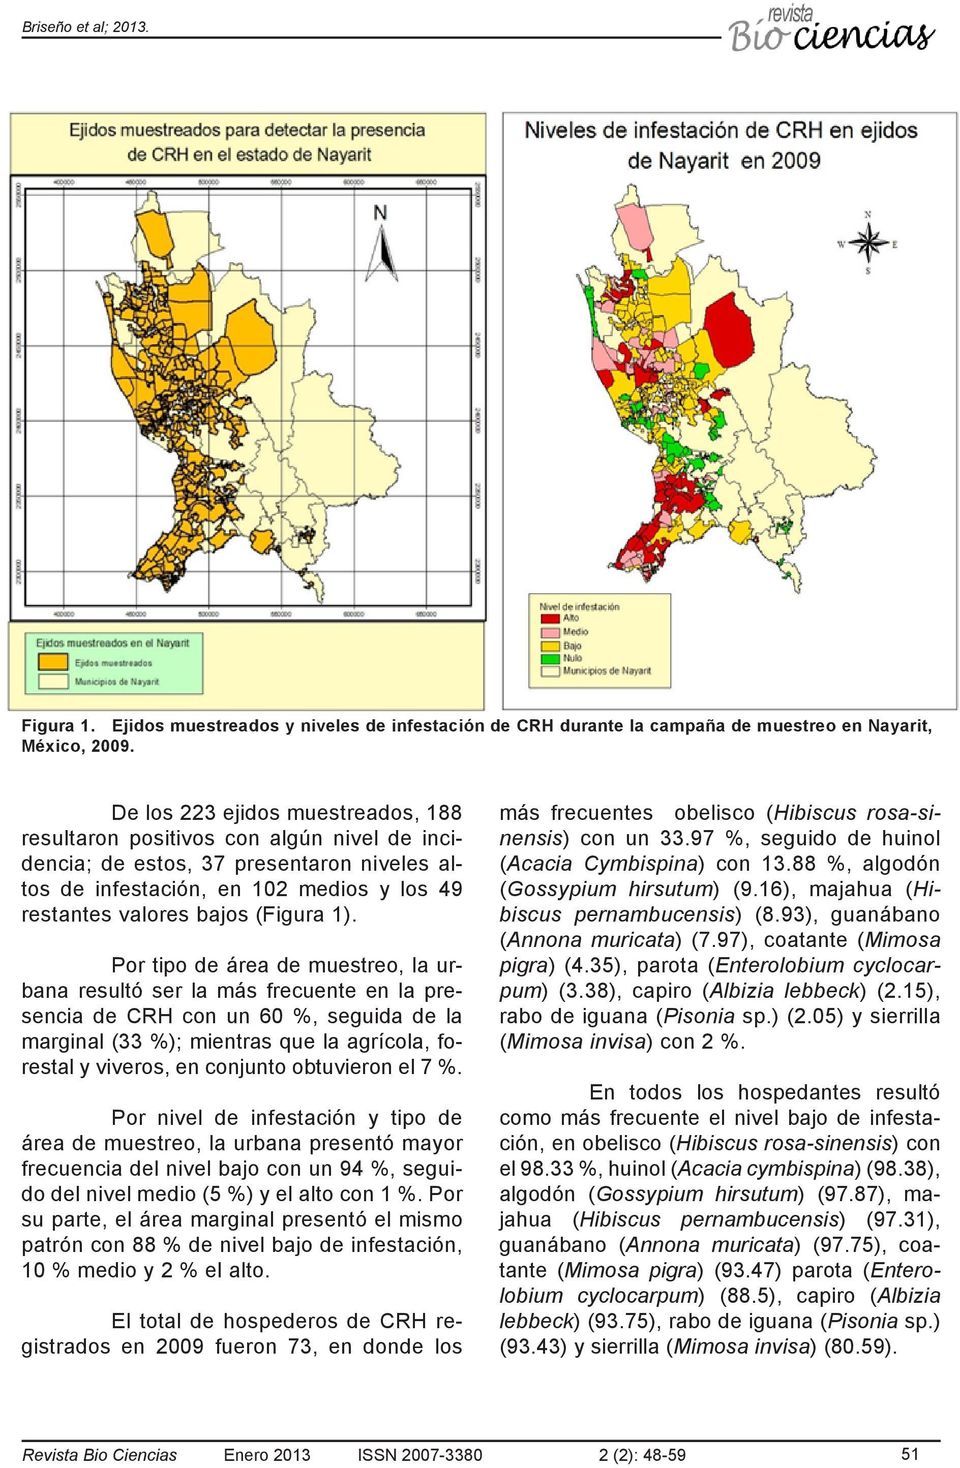 Por tipo de área de muestreo, la urbana resultó ser la más frecuente en la presencia de CRH con un 60 %, seguida de la marginal (33 %); mientras que la agrícola, forestal y viveros, en conjunto